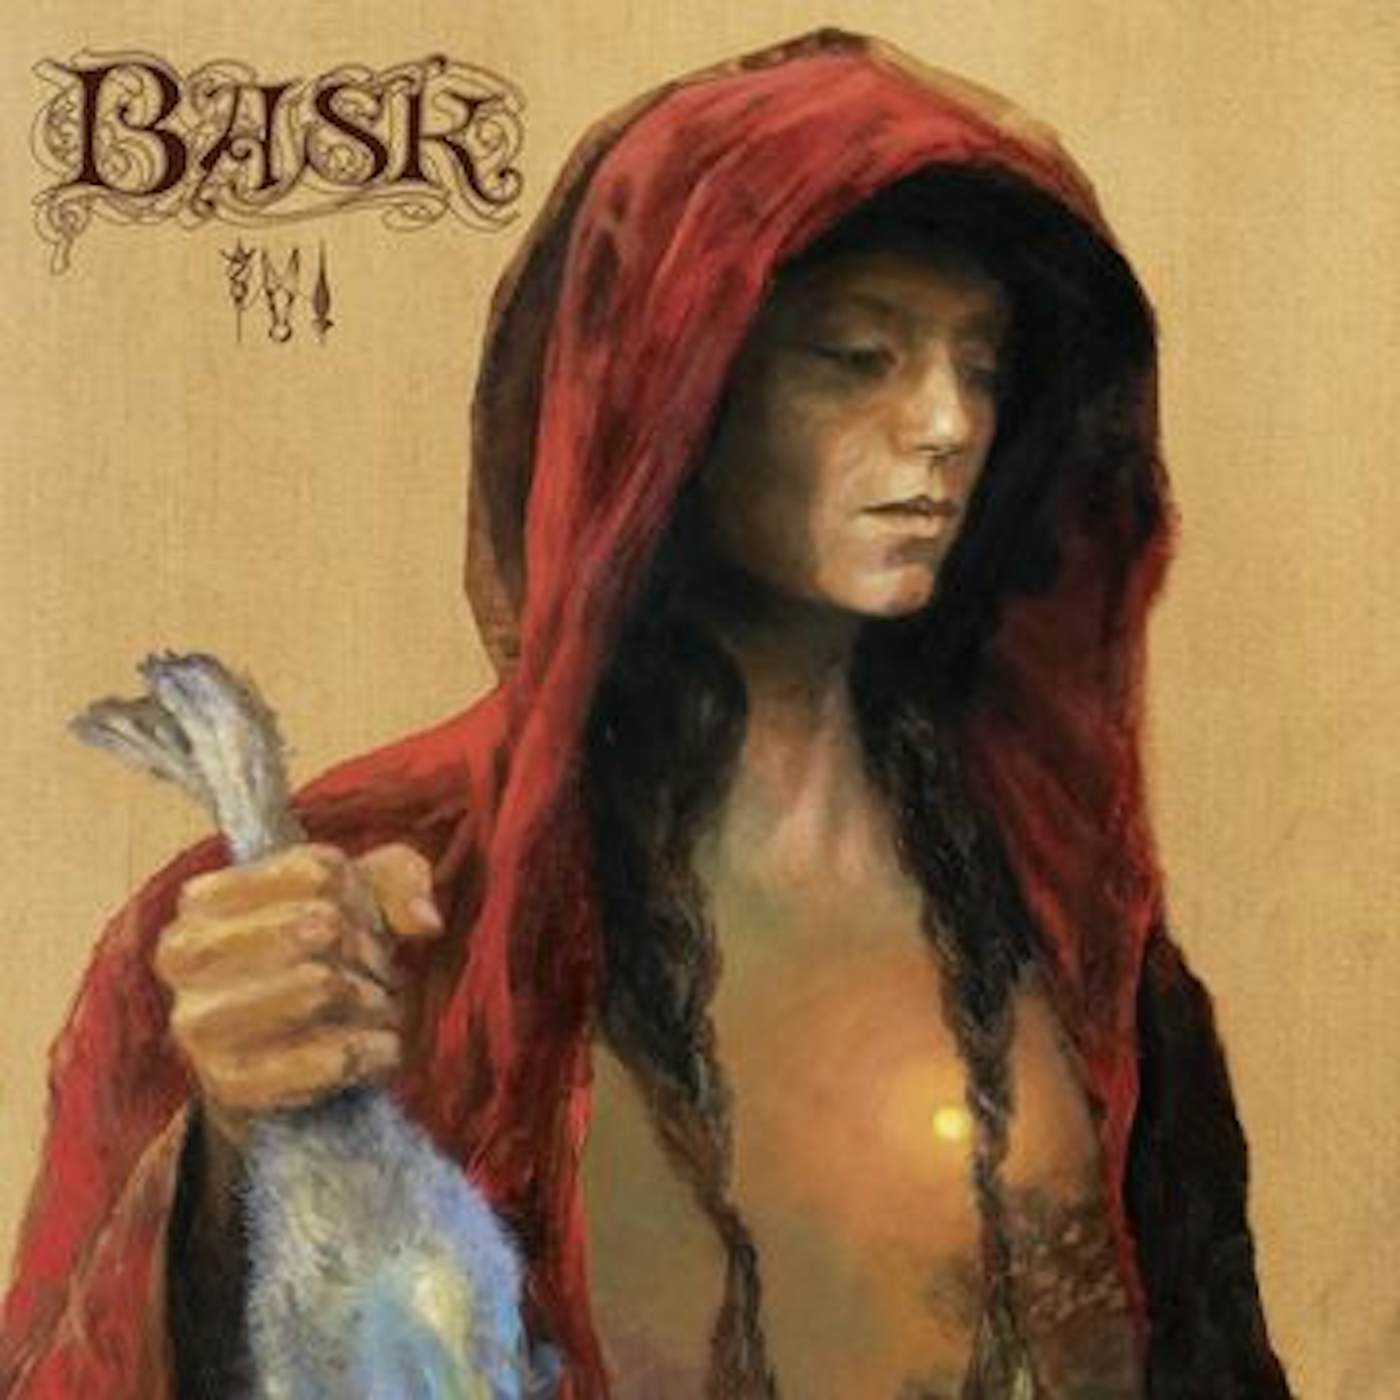 Bask III Vinyl Record